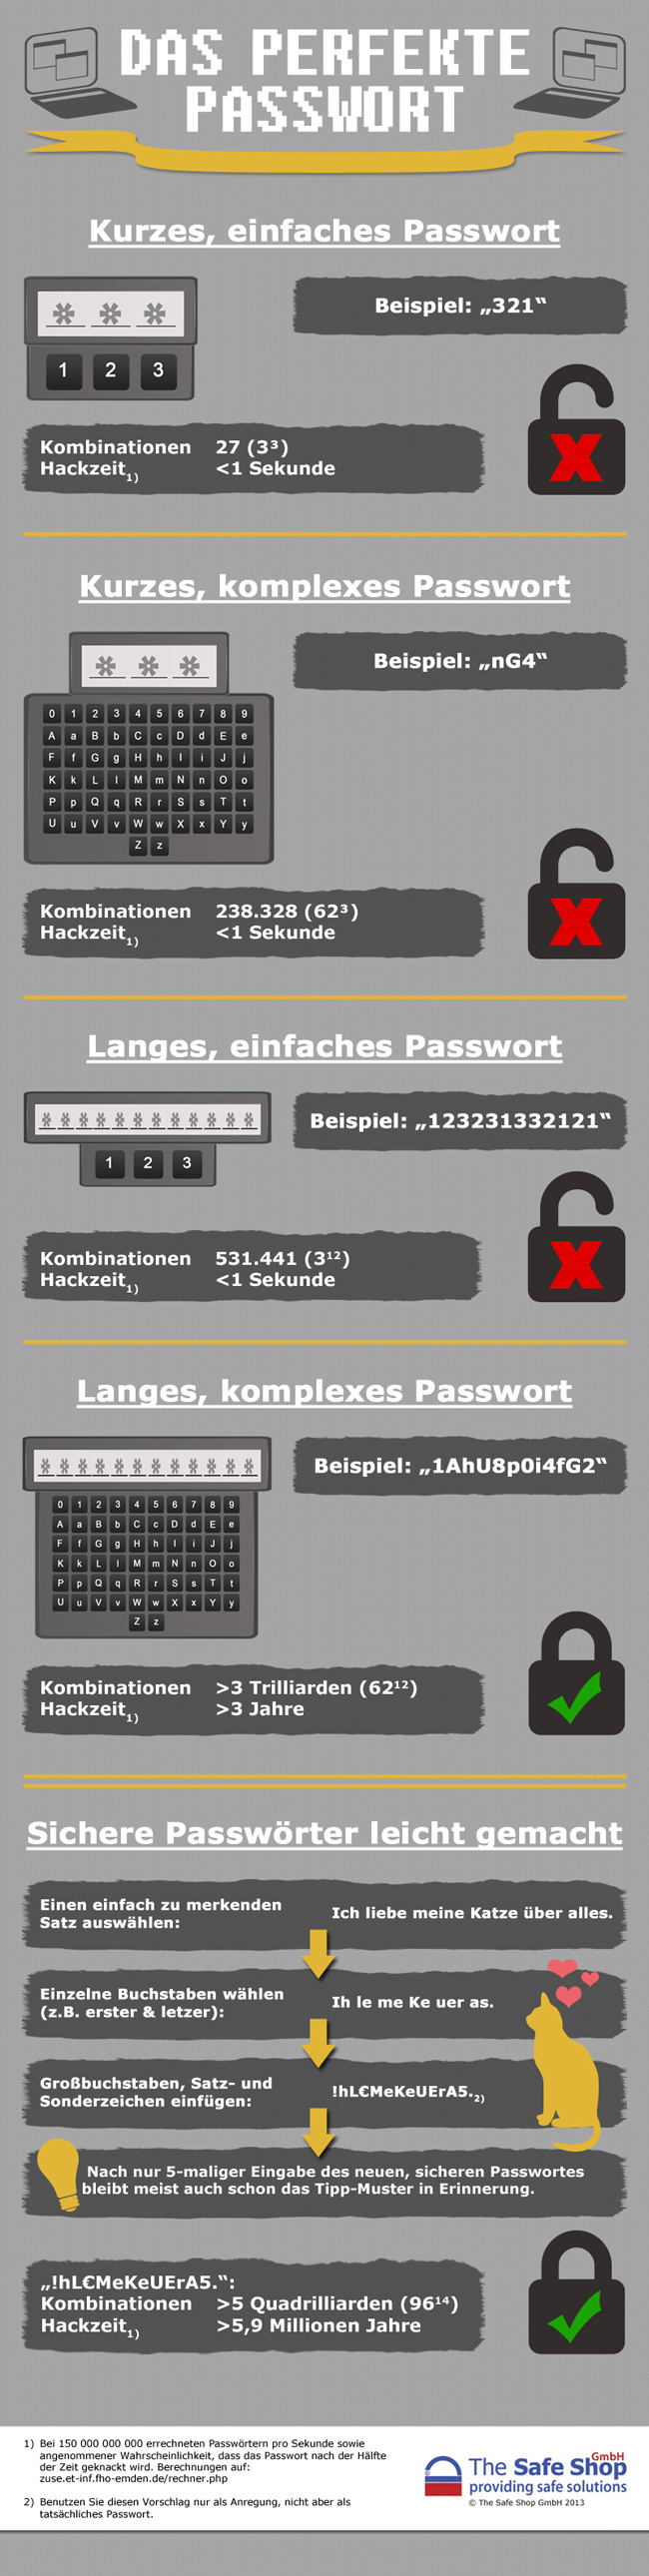 Sichere und unsichere Passwörter